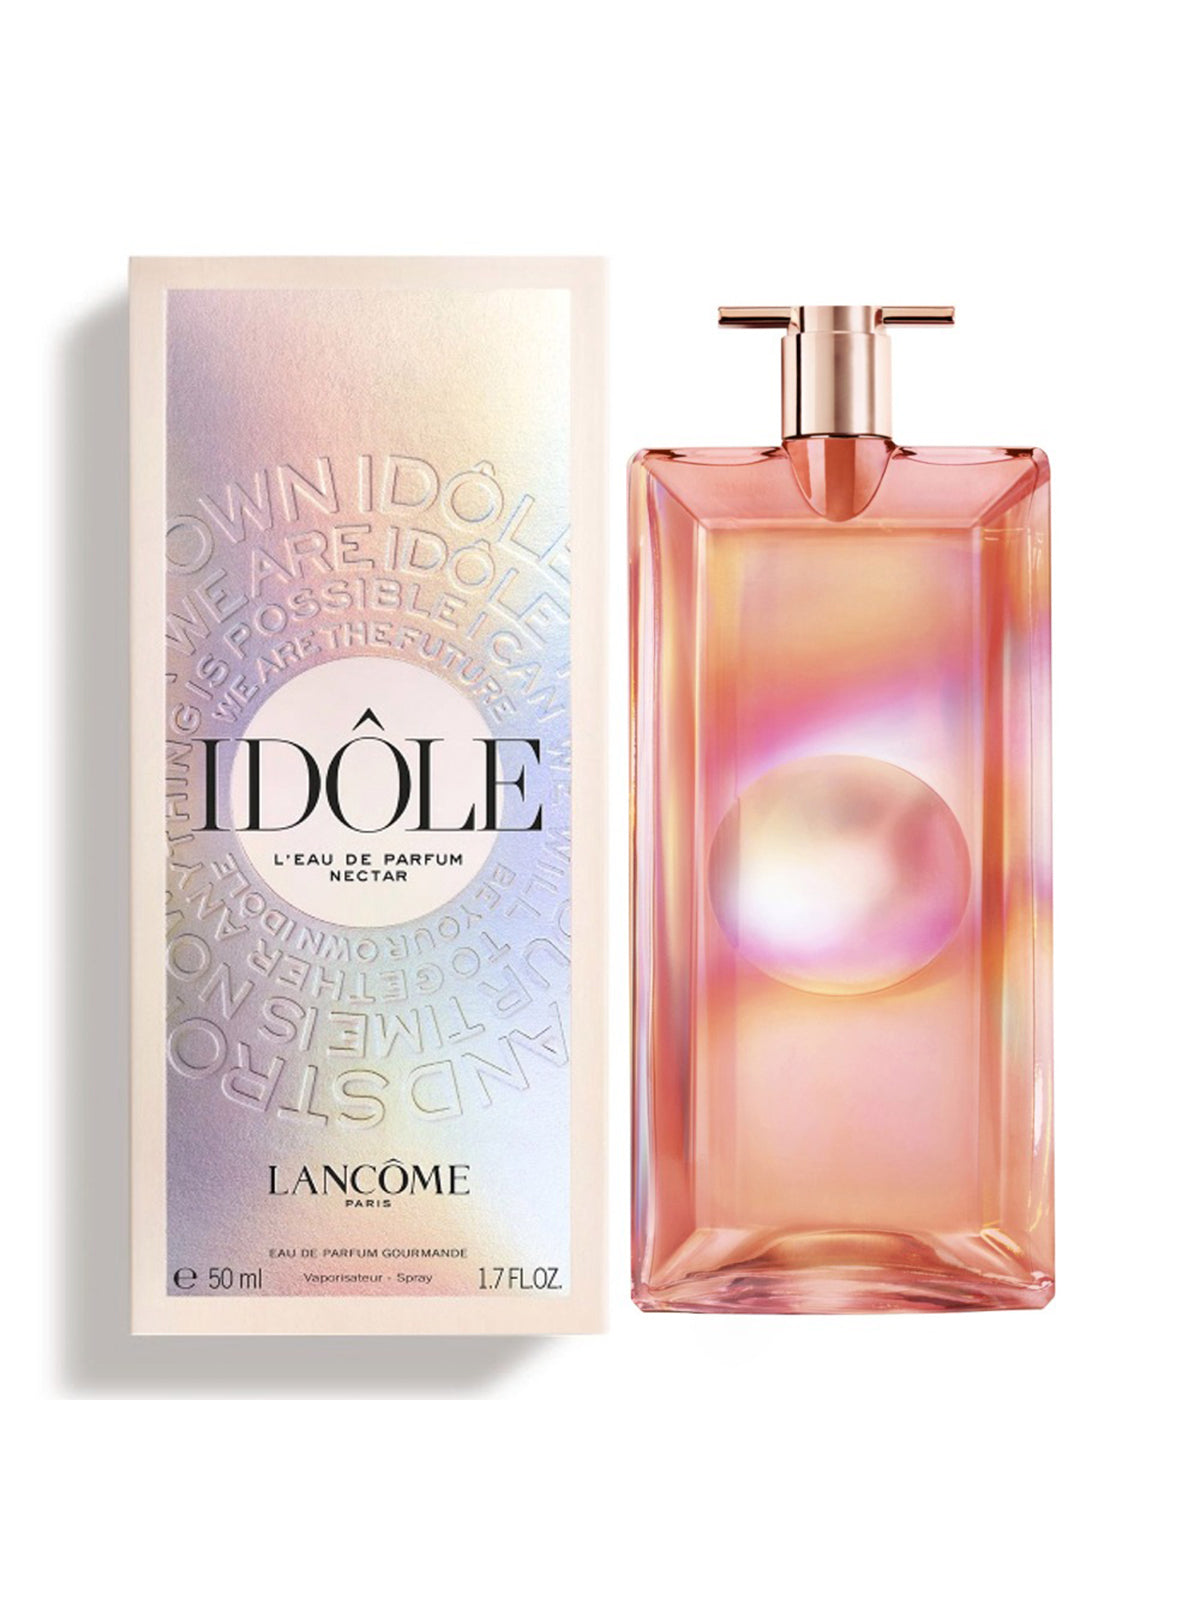 Lancome Idole L'Eau de Parfum Nectar – PERFUME BOUTIQUE